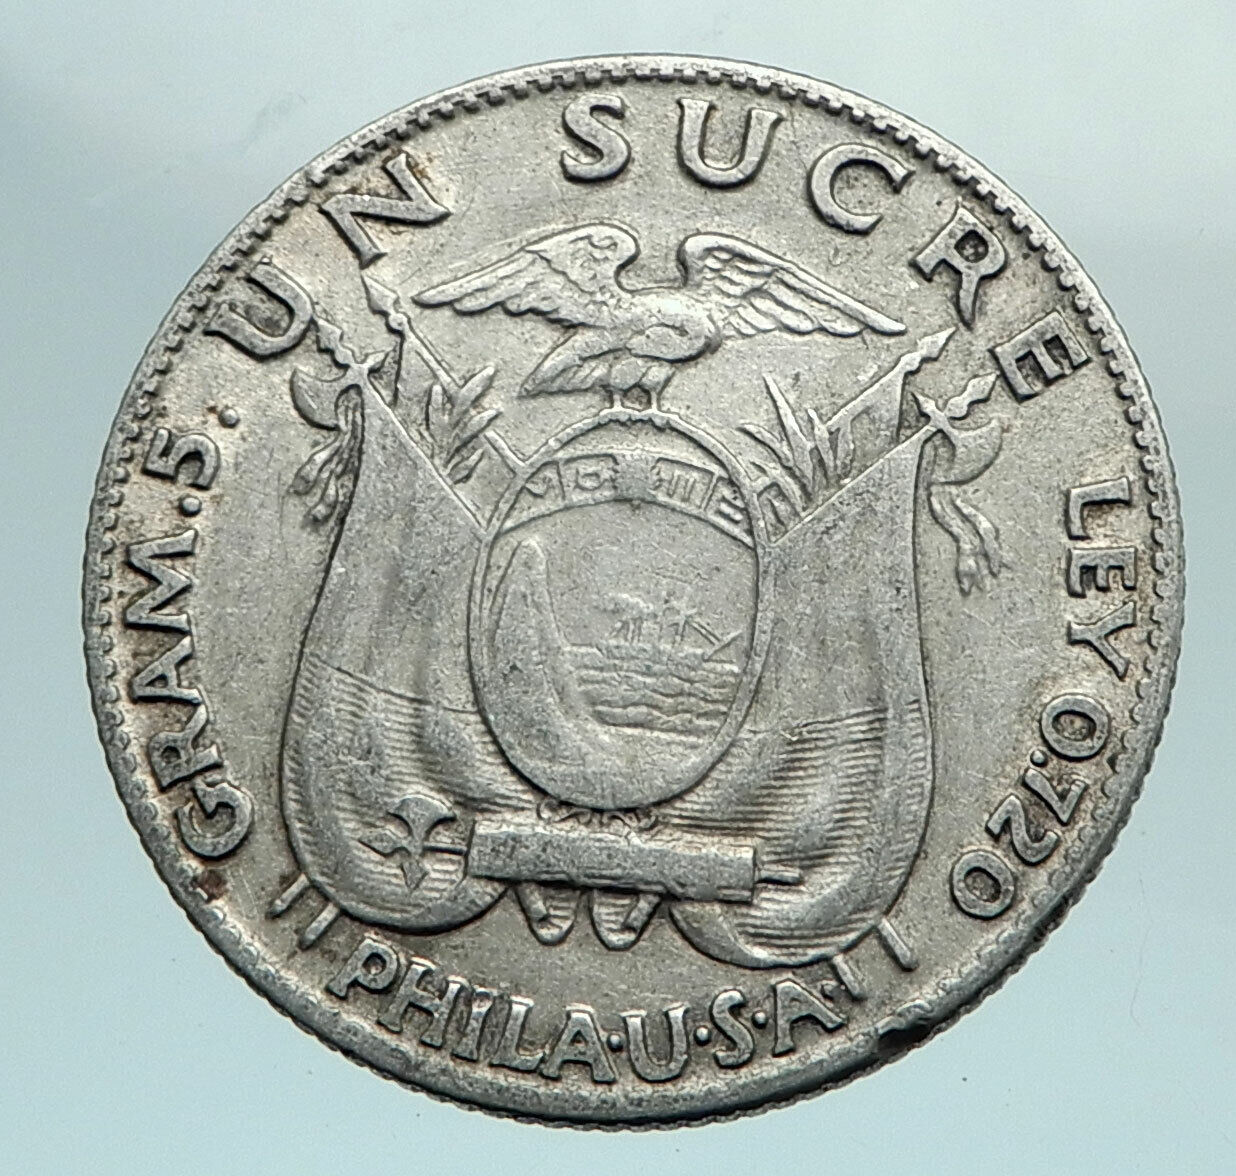 1934 ECUADOR Antonio Jose de Sucre y Alcala Antique Silver Un Sucre Coin i79628